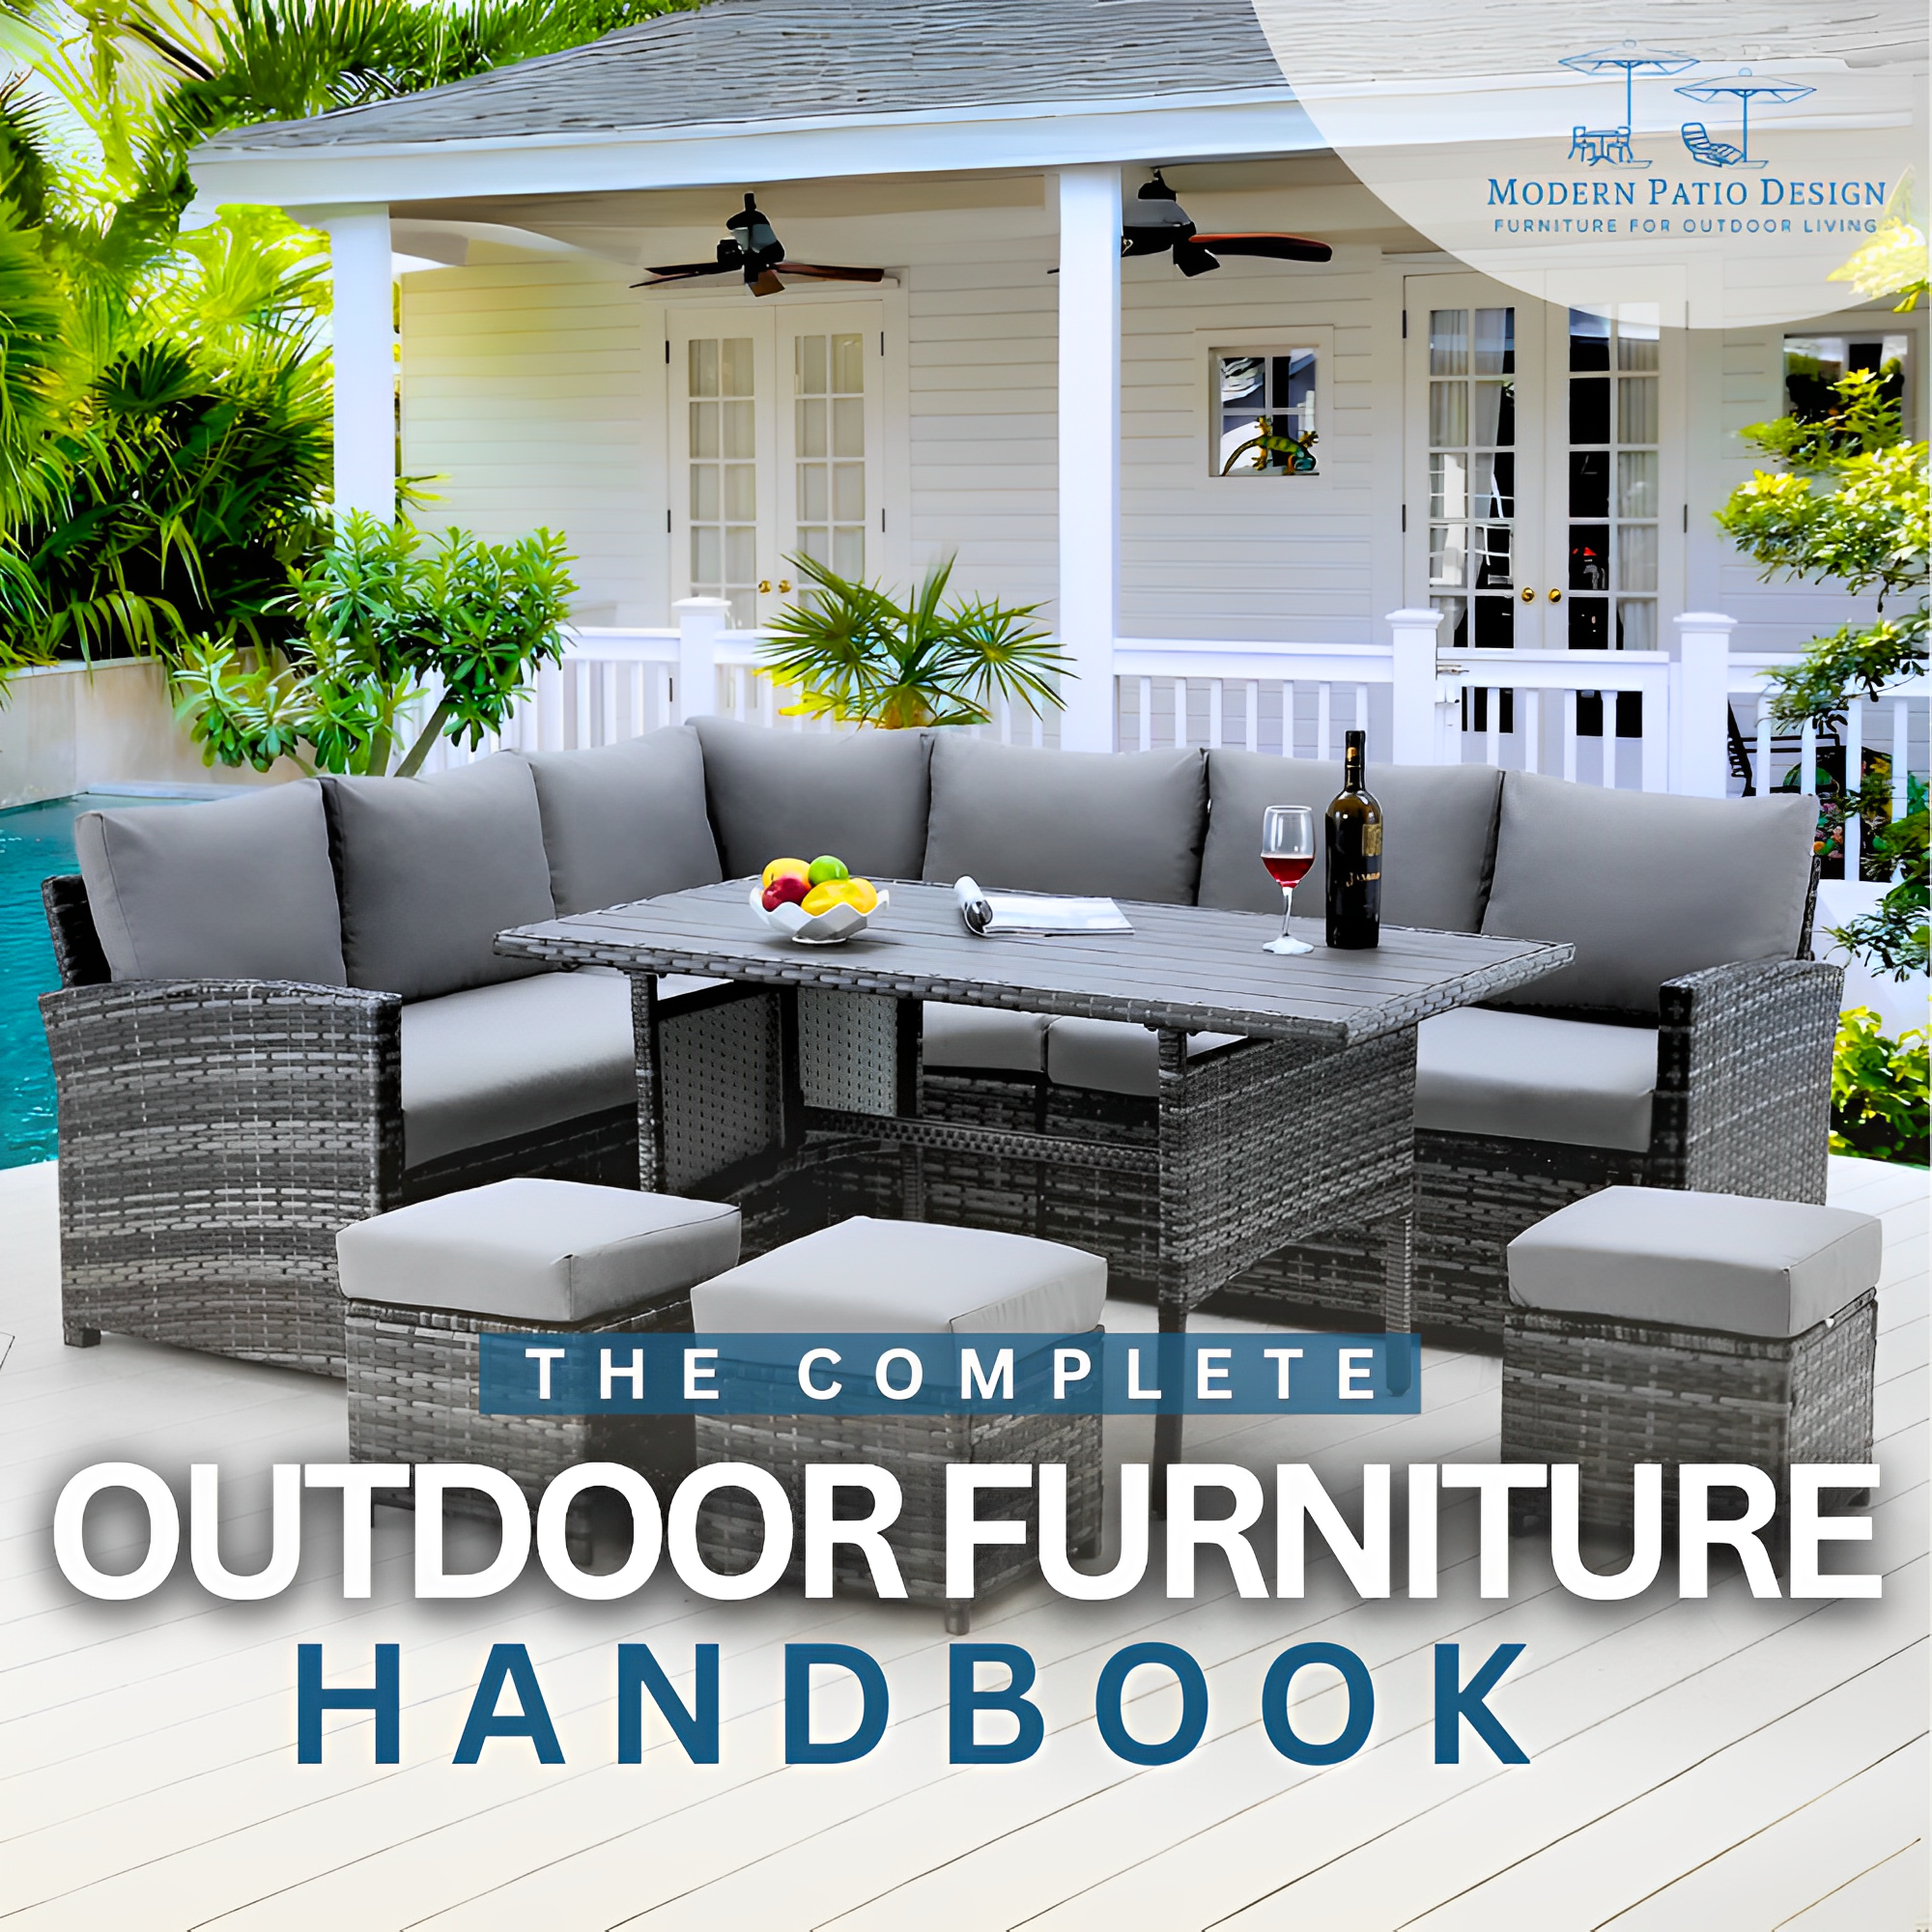 The Complete Outdoor Furniture Handbook